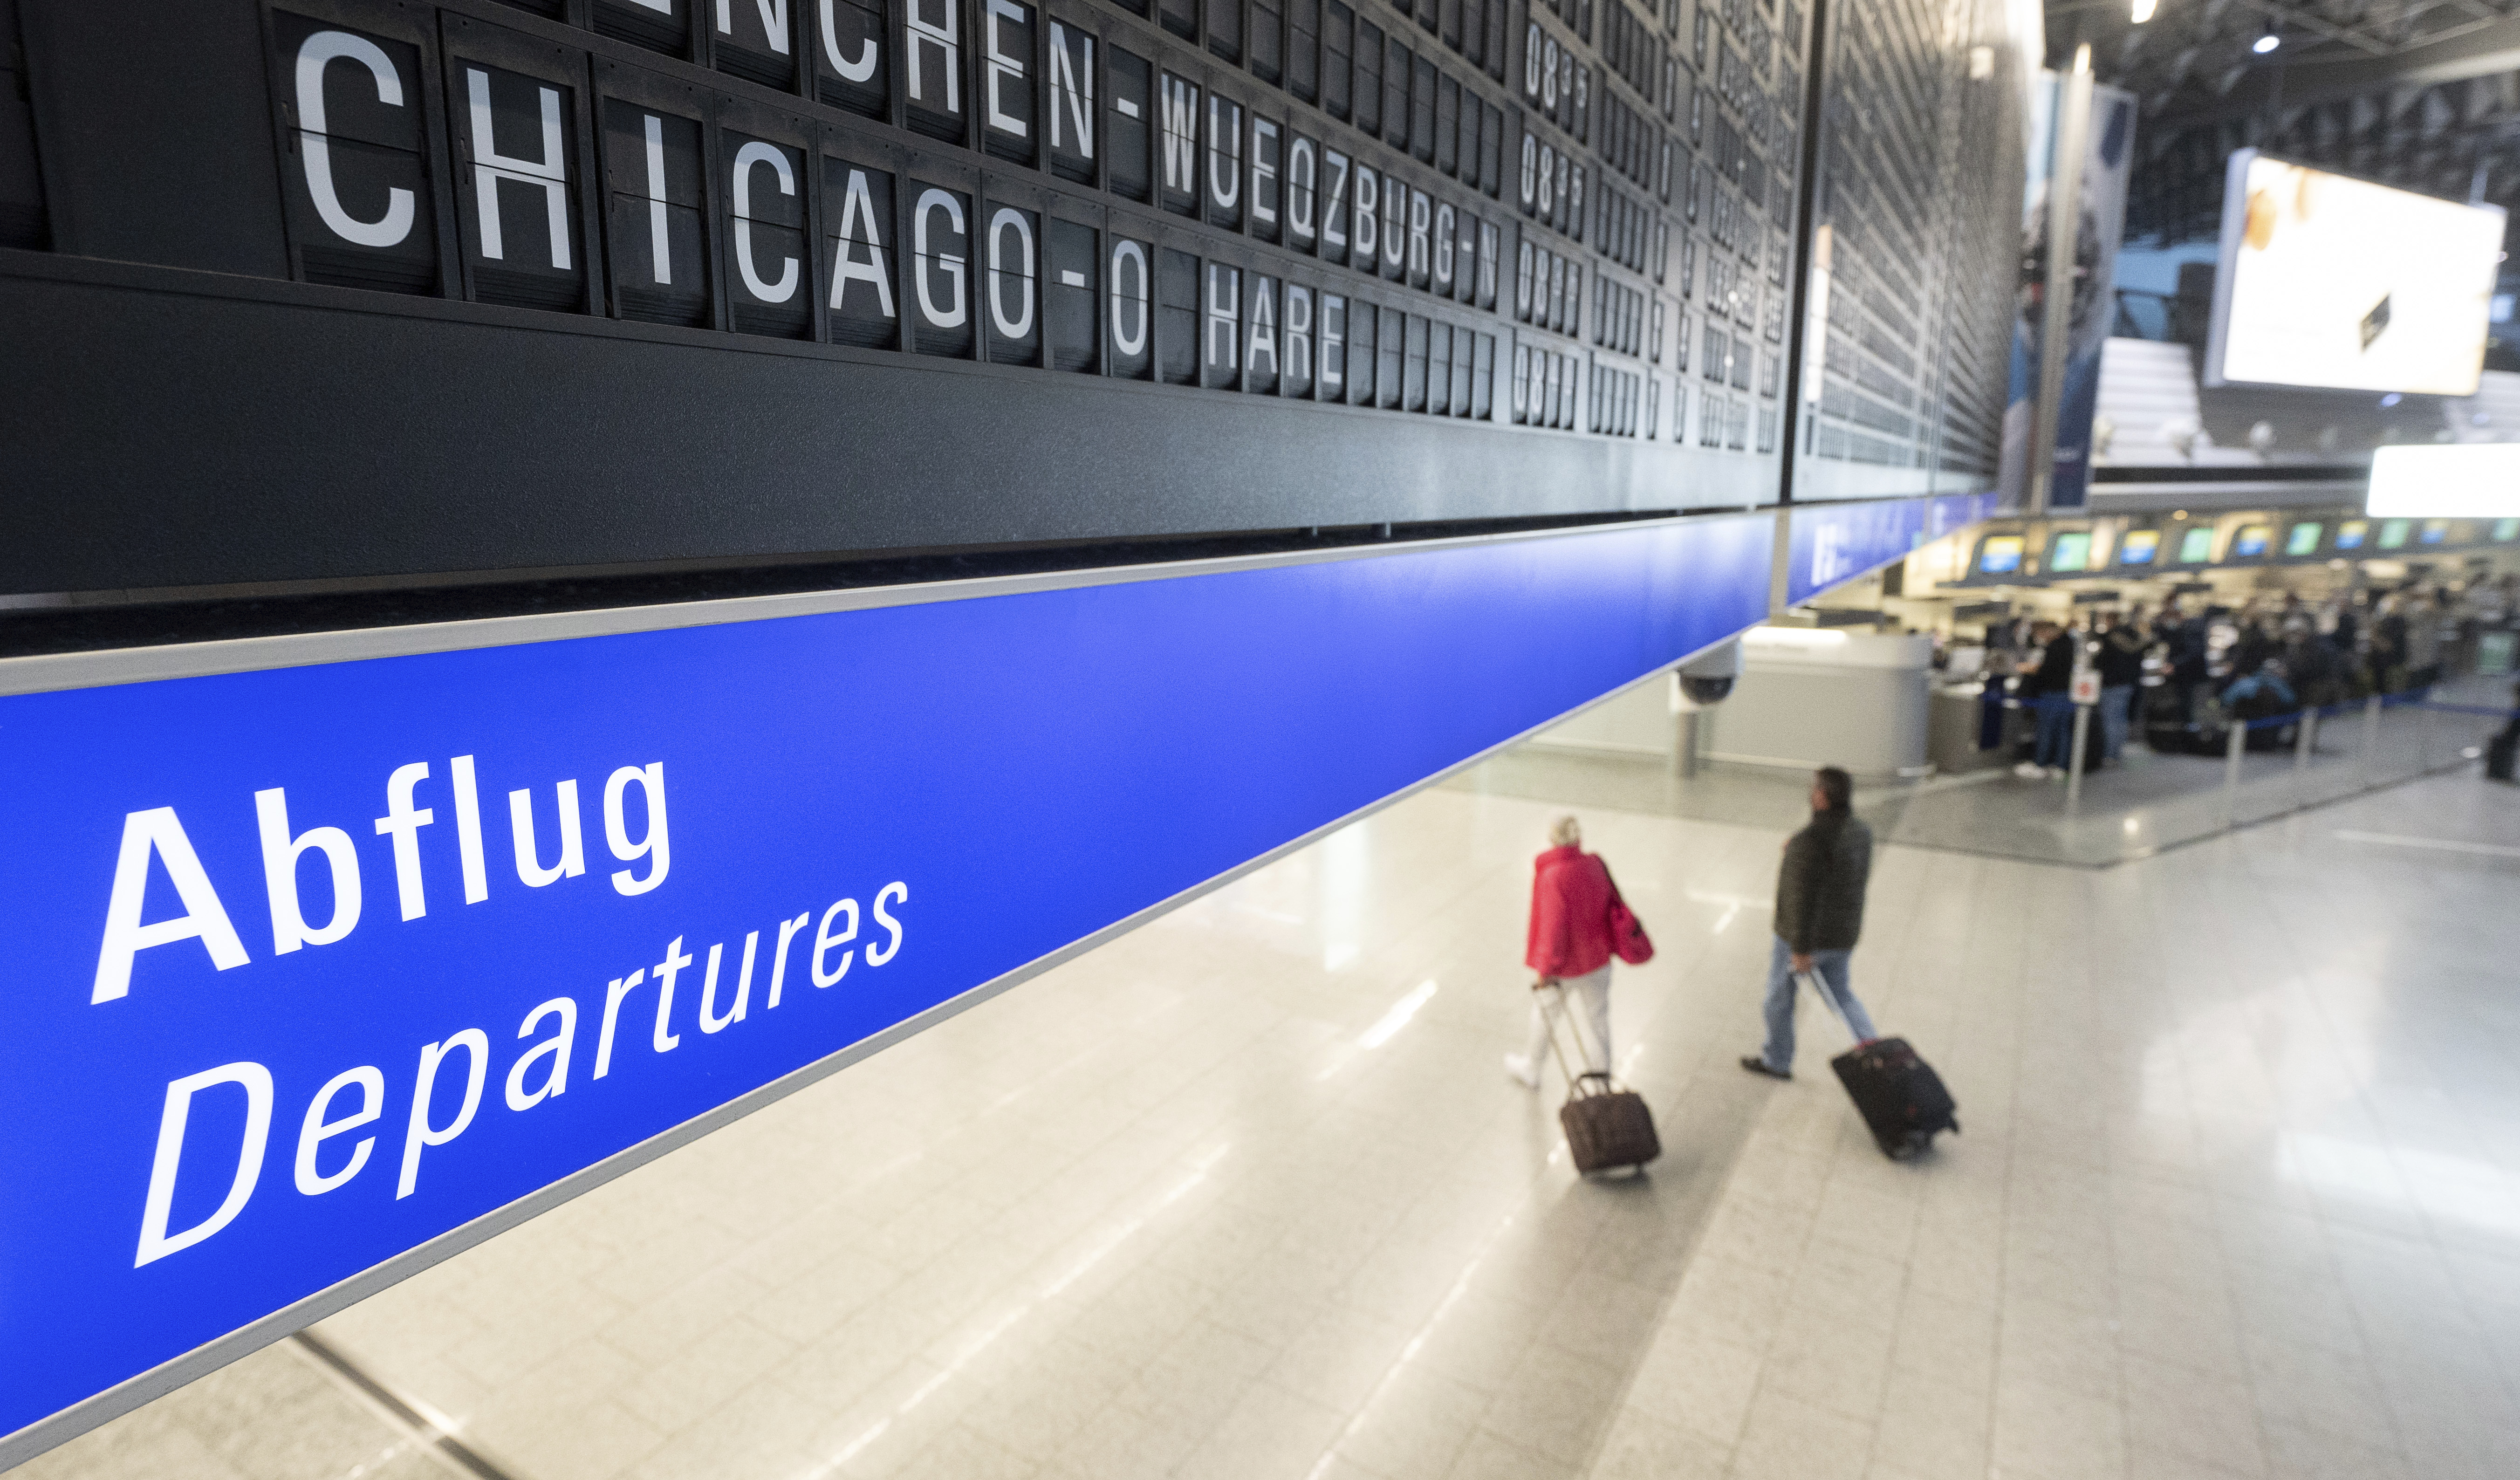 Un vuelo a Chicago O'Hare se muestra en un tablero en el aeropuerto de Frankfurt este lunes (Sebastian Gollnow/dpa via AP)